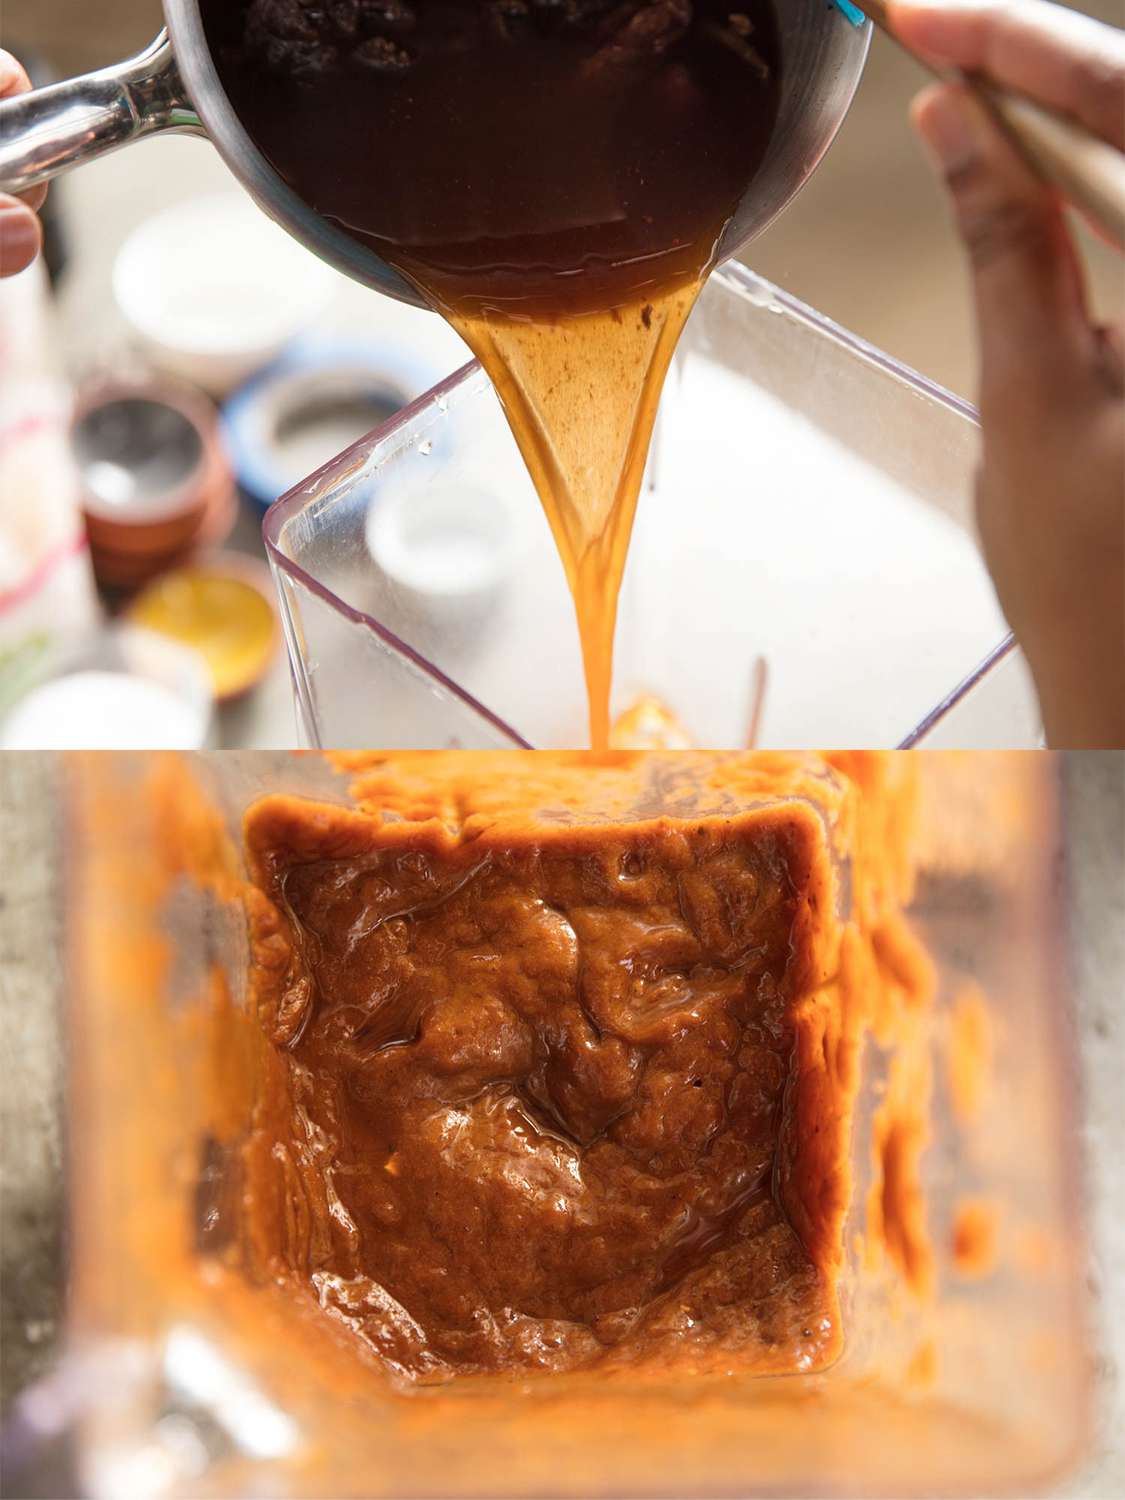 两个影像拼贴。上图显示的是煮熟的罗望子酱被从一个不锈钢锅倒进搅拌机。下面的图片显示了搅拌机碗拿着厚,内部混合酸辣酱。gydF4y2Ba